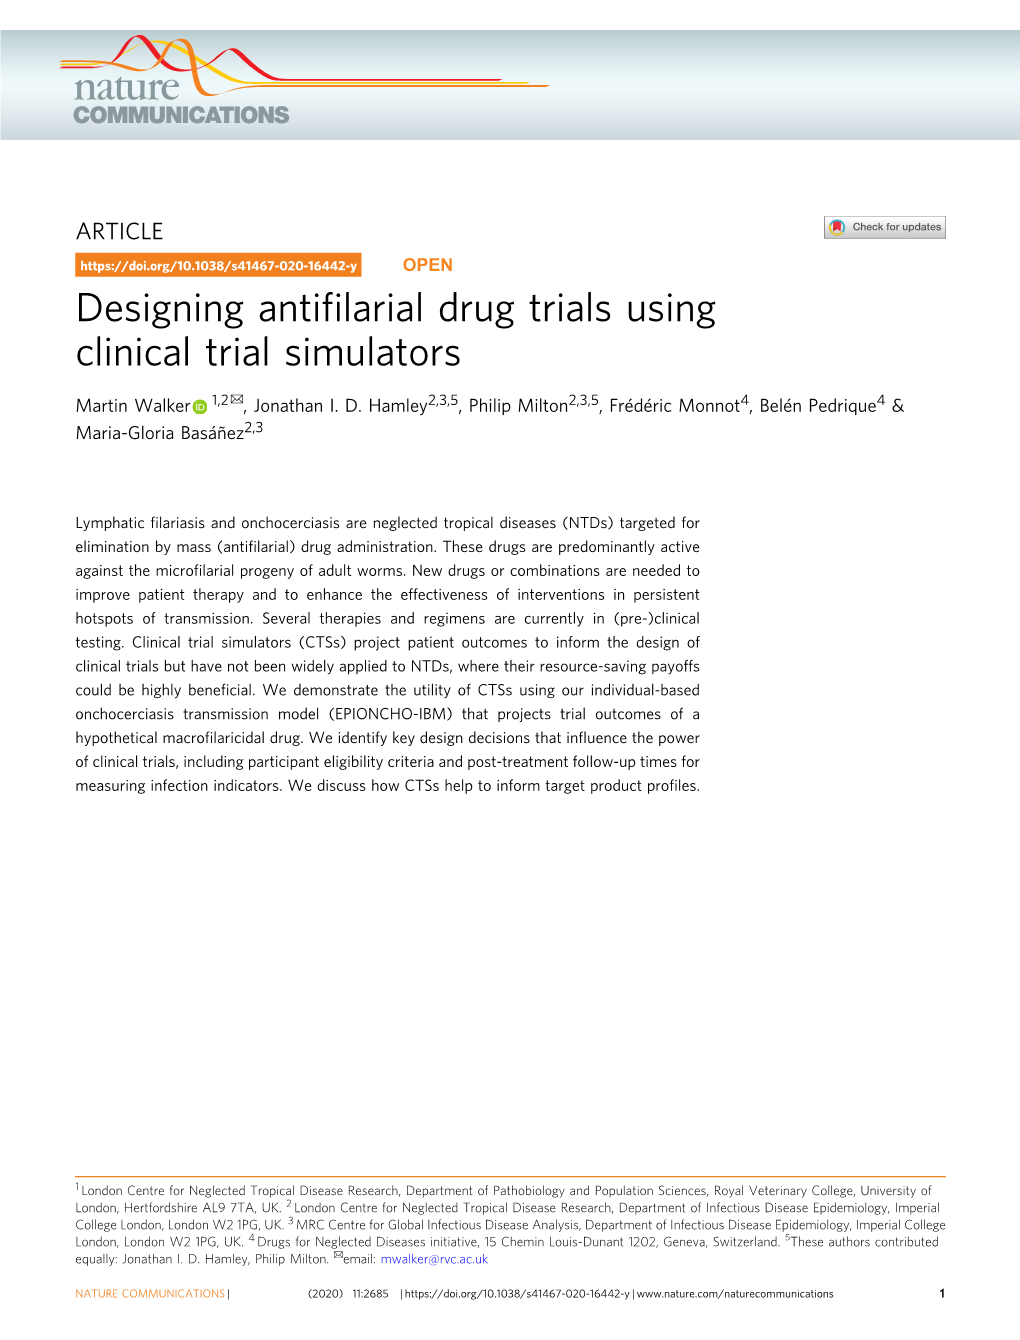 Designing Antifilarial Drug Trials Using Clinical Trial Simulators